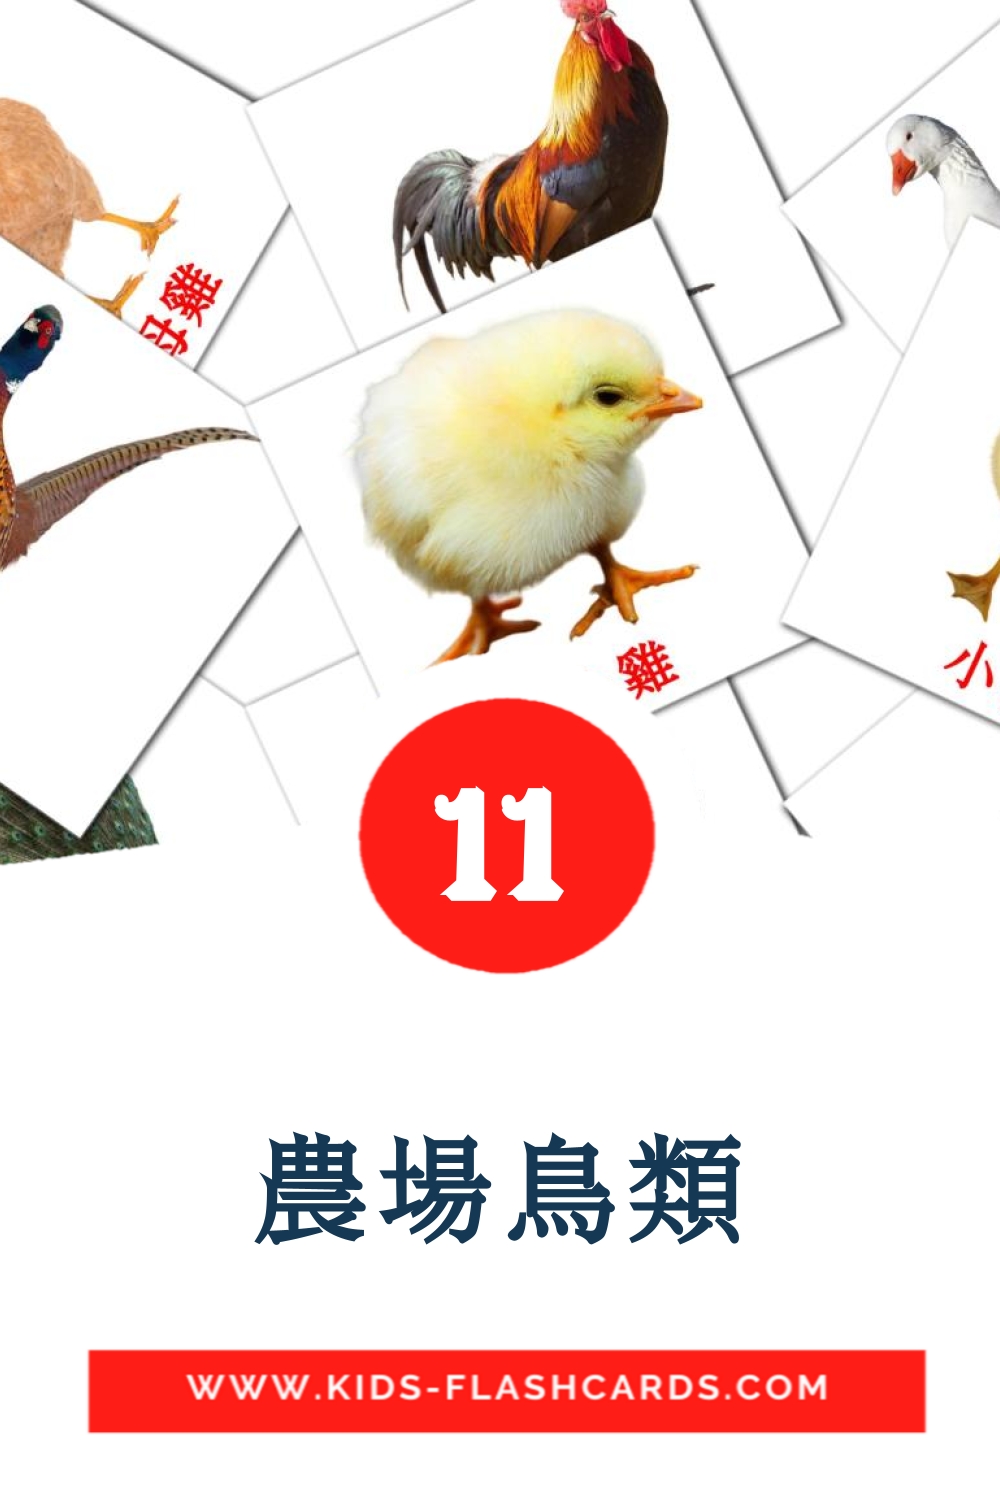 11 carte illustrate di 農場鳥類 per la scuola materna in cinese(tradizionale)